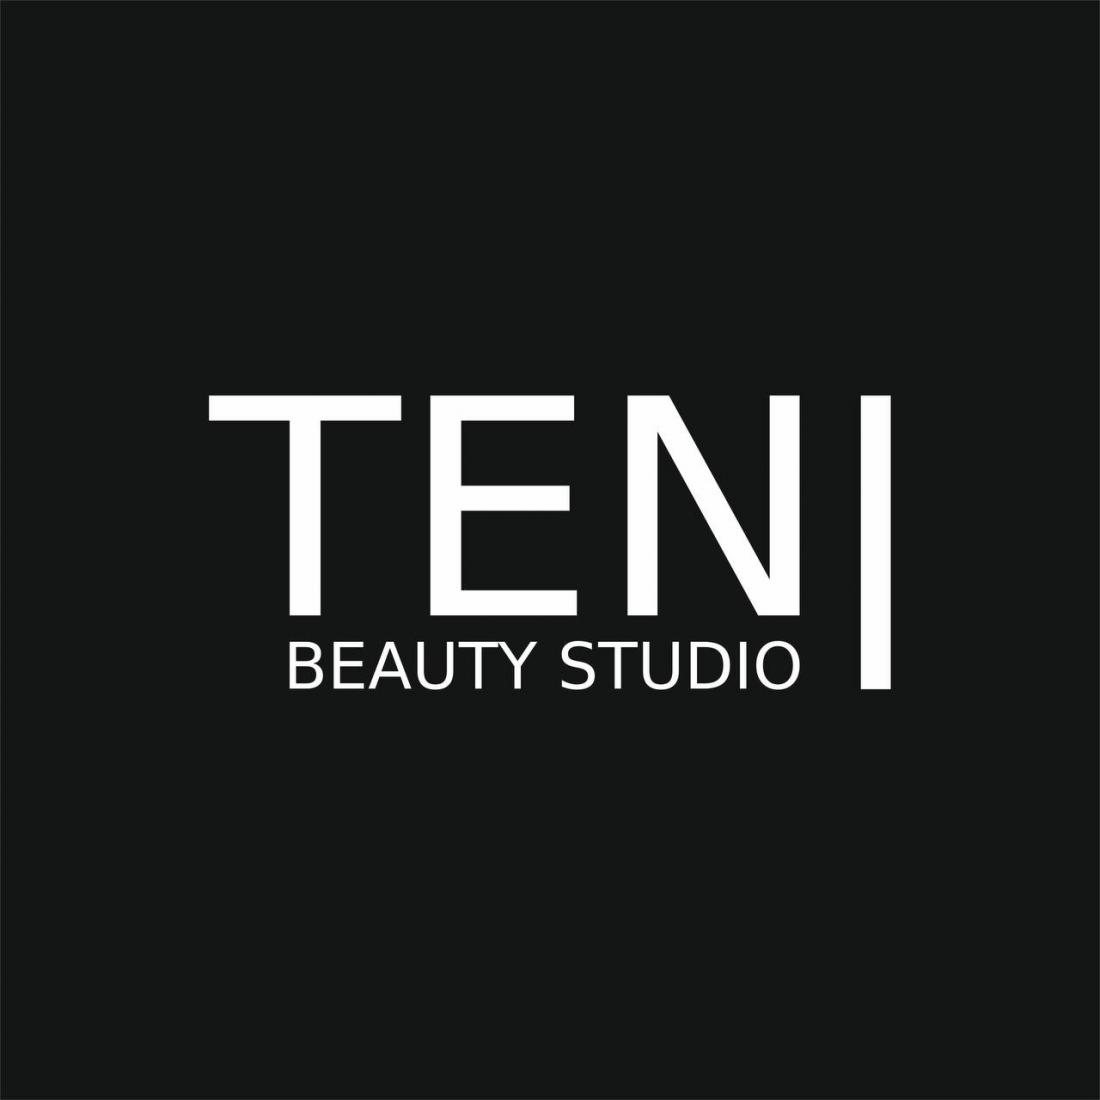 Женский/мужской маникюр, педикюр, наращивание, долговременное покрытие от 15 р. в студии красоты "TENI"